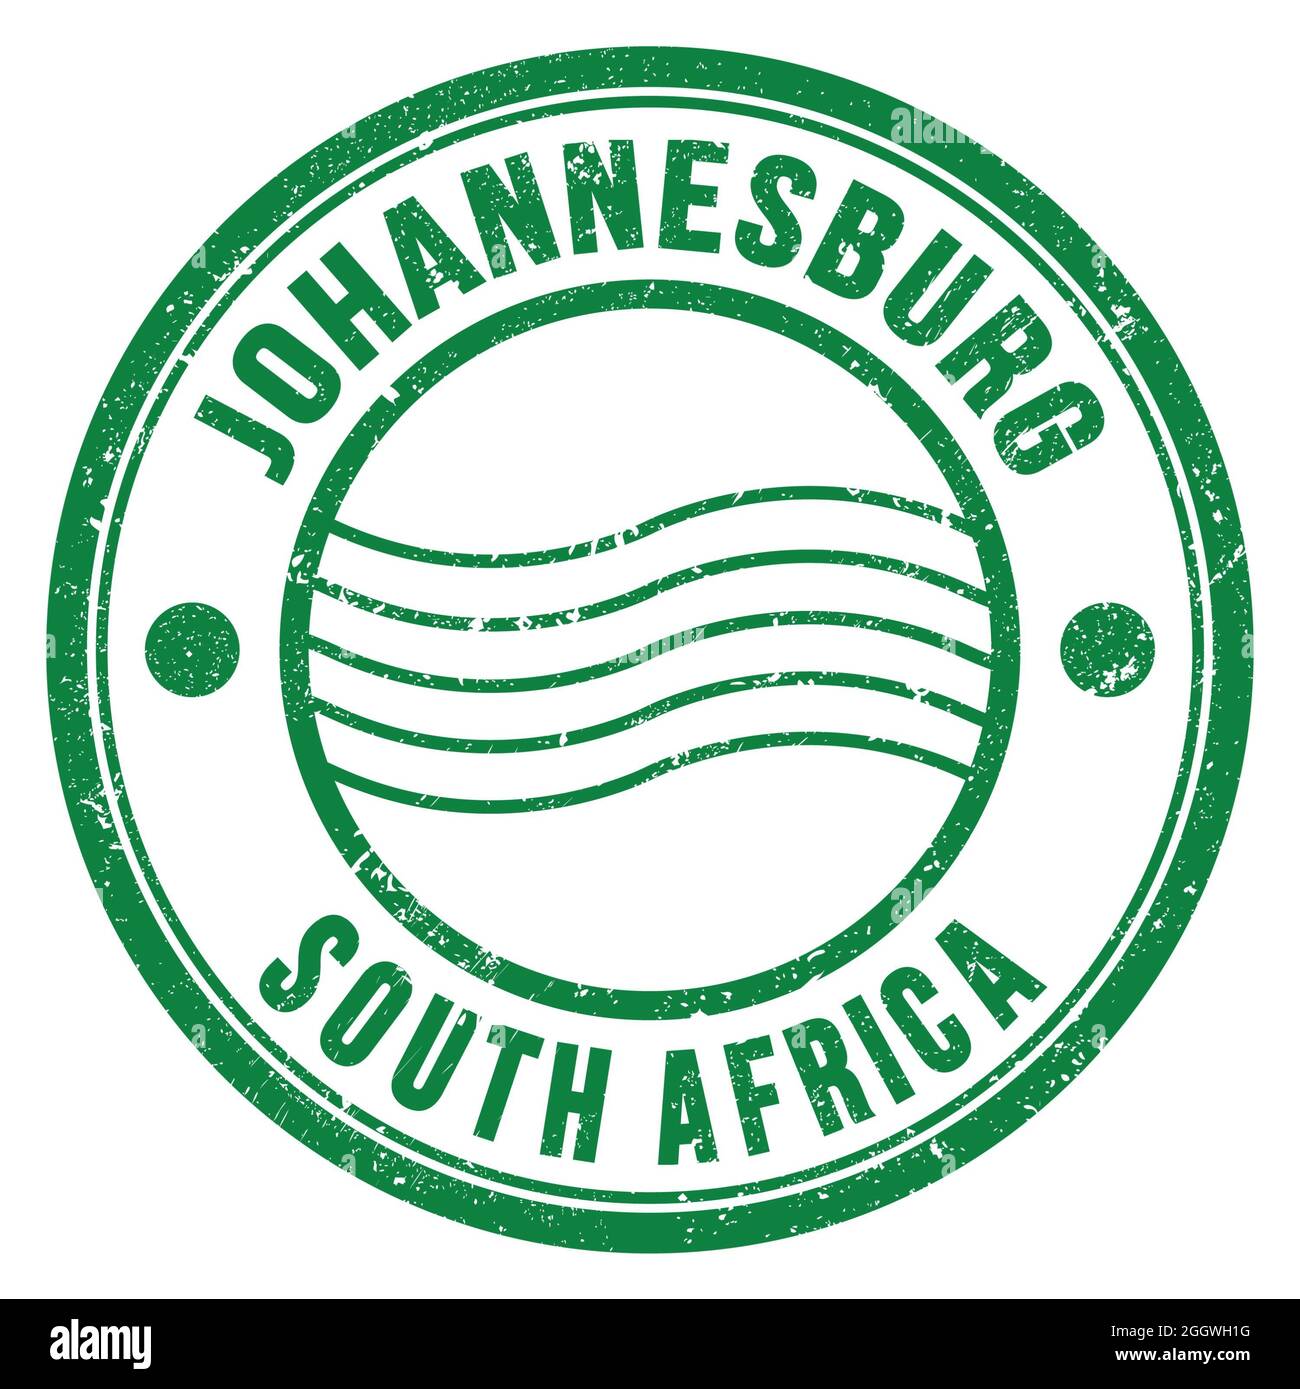 JOHANNESBURG - SÜDAFRIKA, Worte auf grüner runder Briefmarke geschrieben Stockfoto